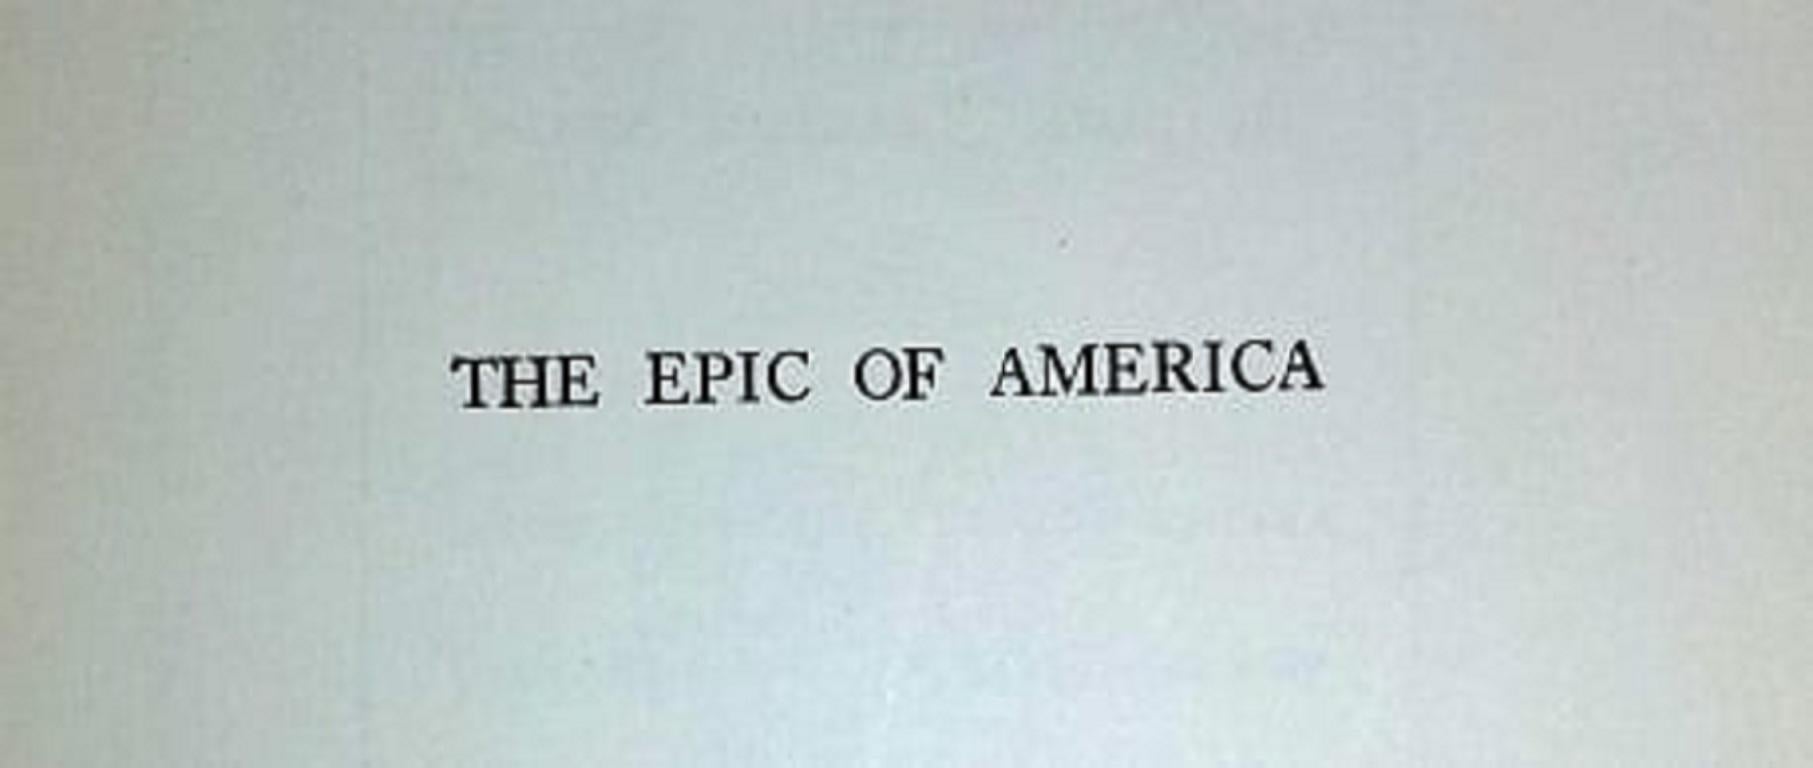 PRÉSENTE UNE RARE ÉDITION cartonnée de L'Épopée de l'Amérique par James Truslow Adams, illustré par M&M. Gallagher, publié par Little, Brown and Company of Boston en 1932.

Considérée comme une première édition, mais pas comme une impression